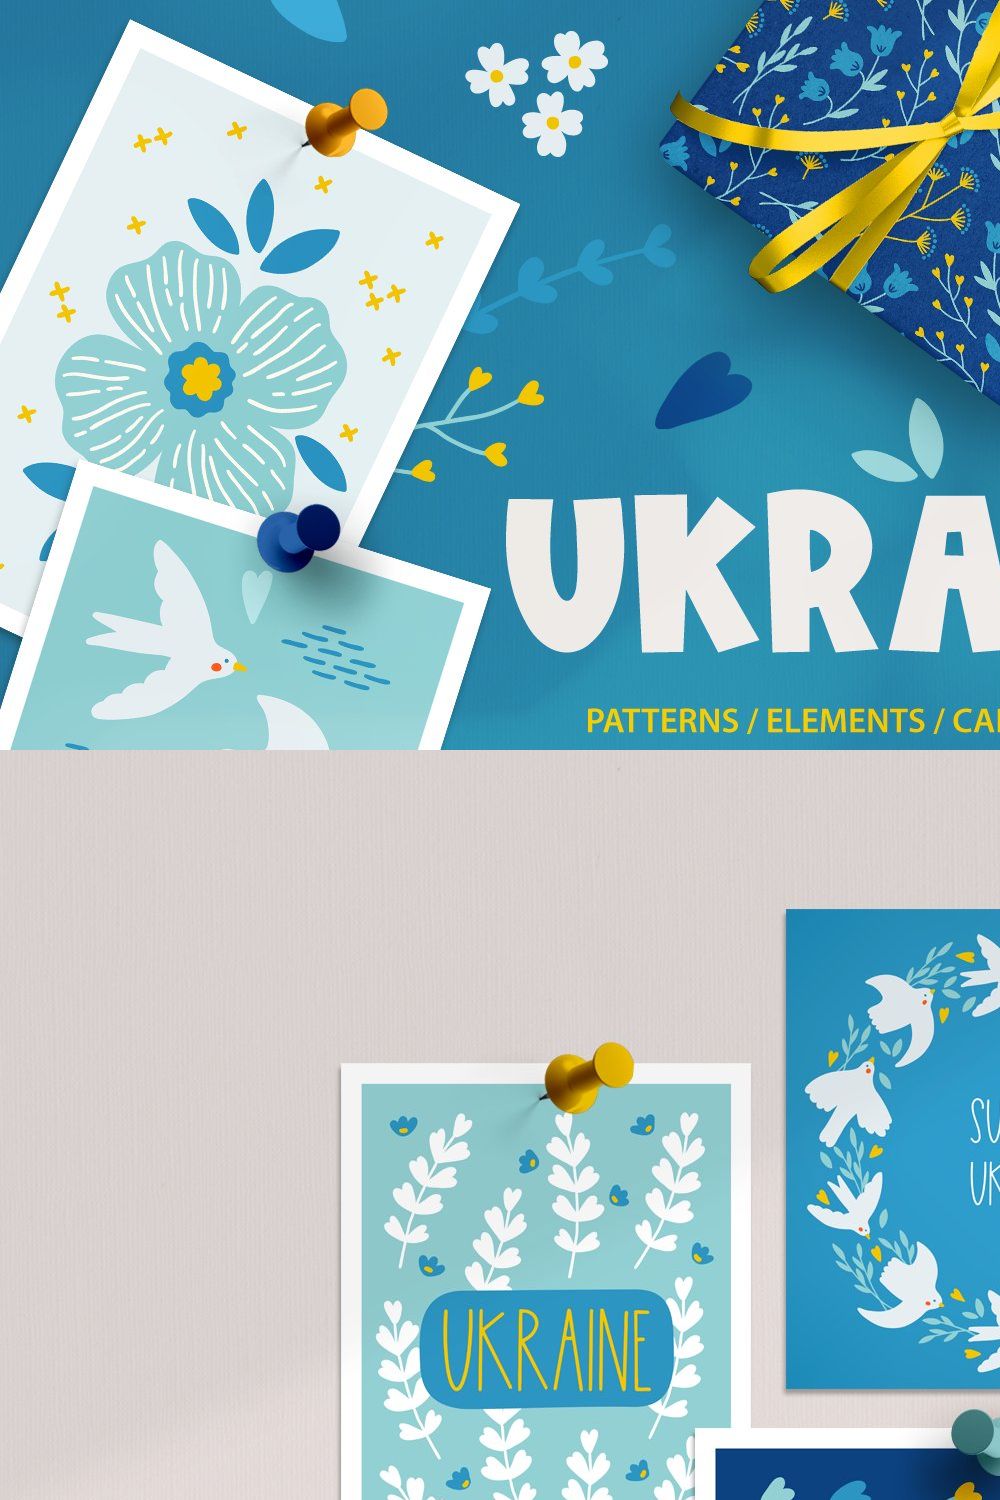 Ukraine Kit pinterest preview image.